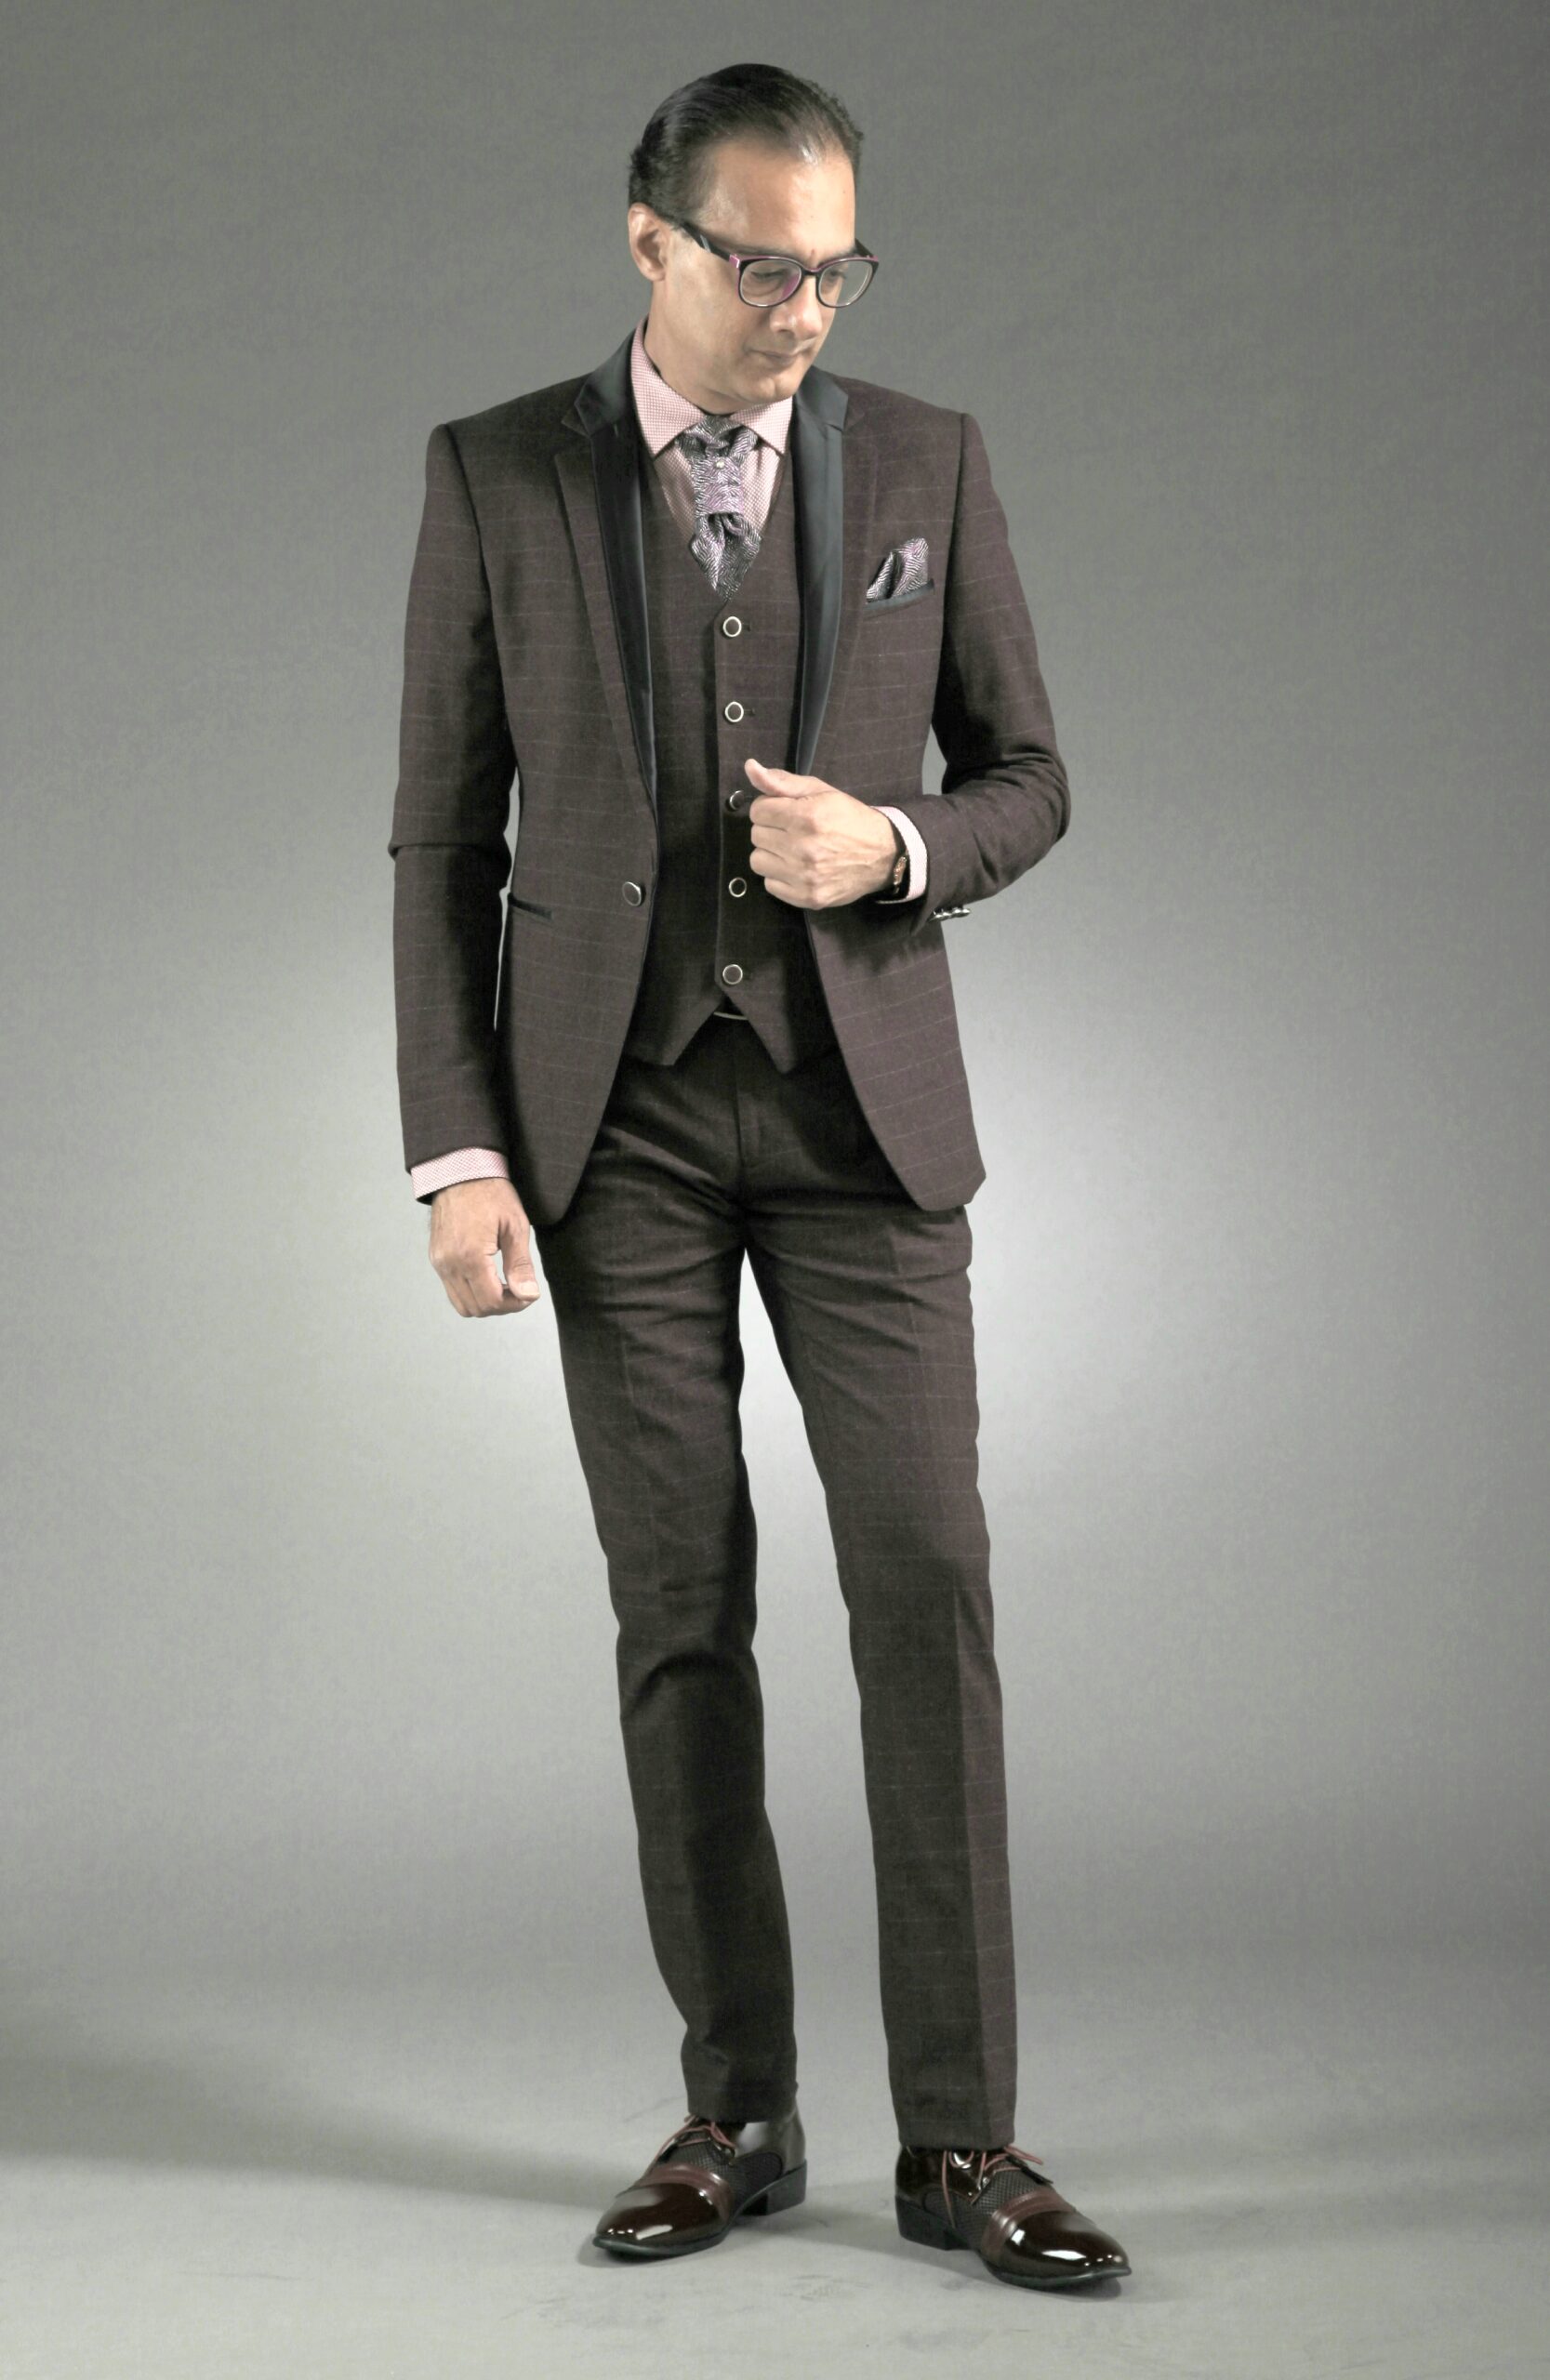 Mst 5069 02 Rent Rental Hire Tuxedo Suit Black Tie Suit Designer Suits Shop Tailor Tailors Singapore Wedding